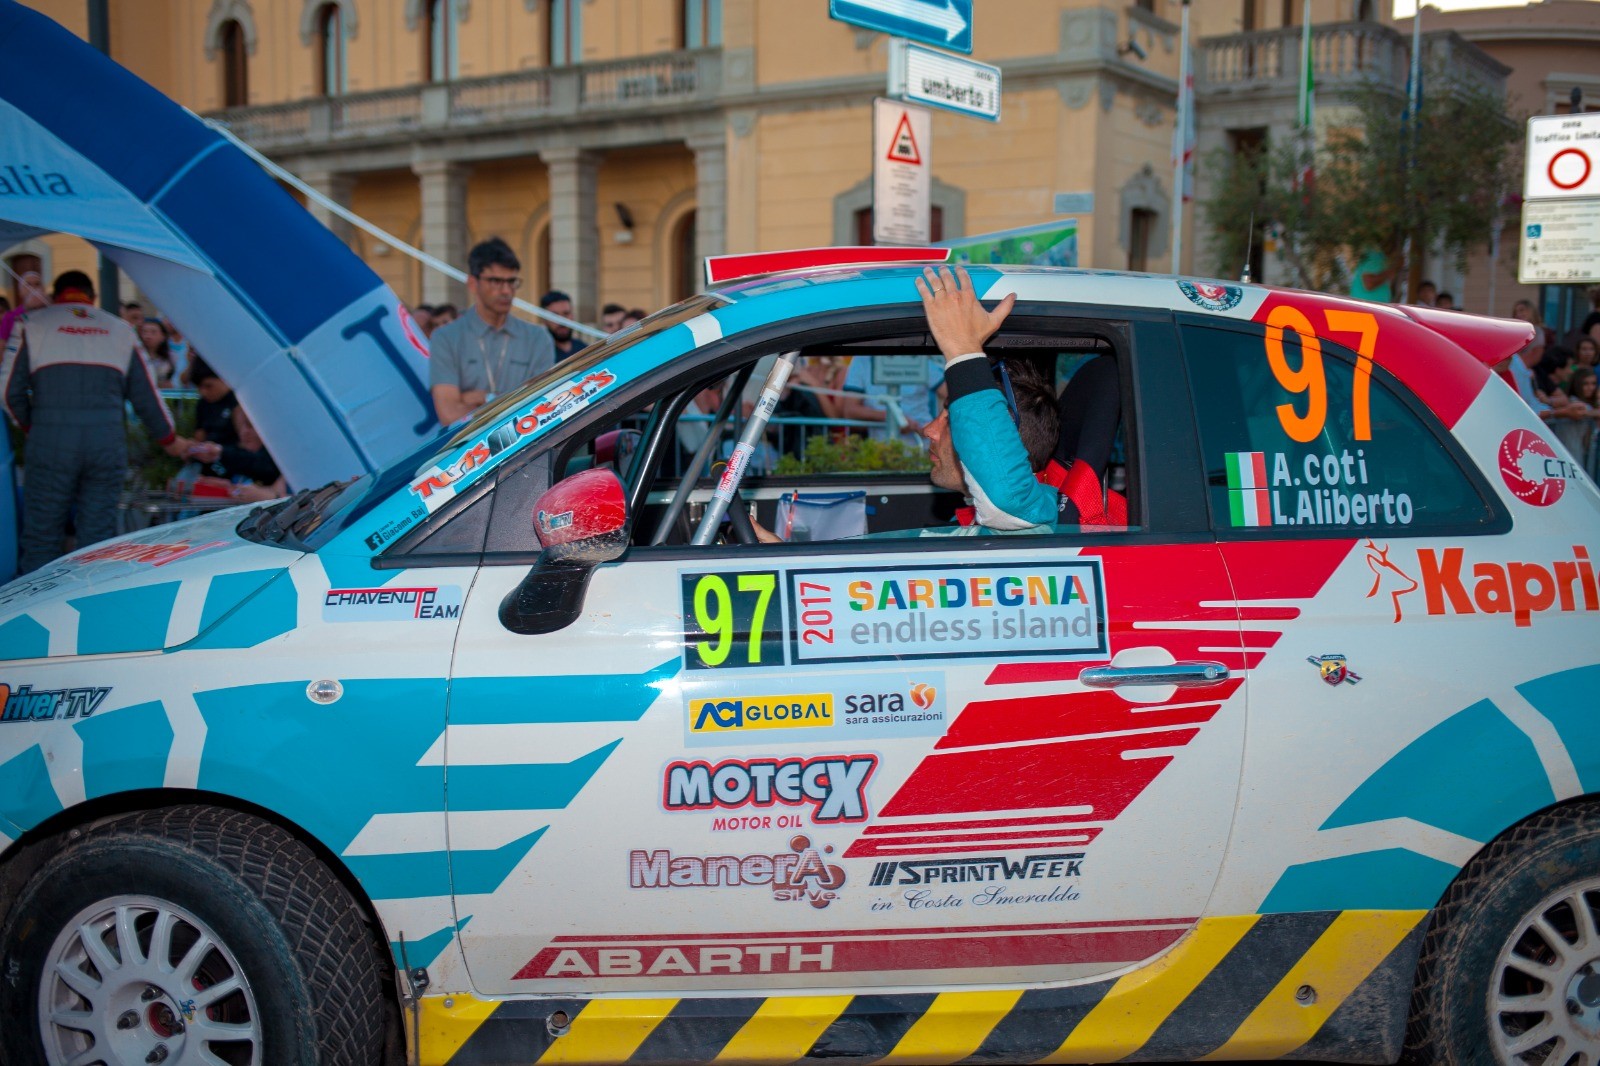 Rally Italia Sardegna 2023. Olbia pronta a dare il via all’evento il 29 maggio.